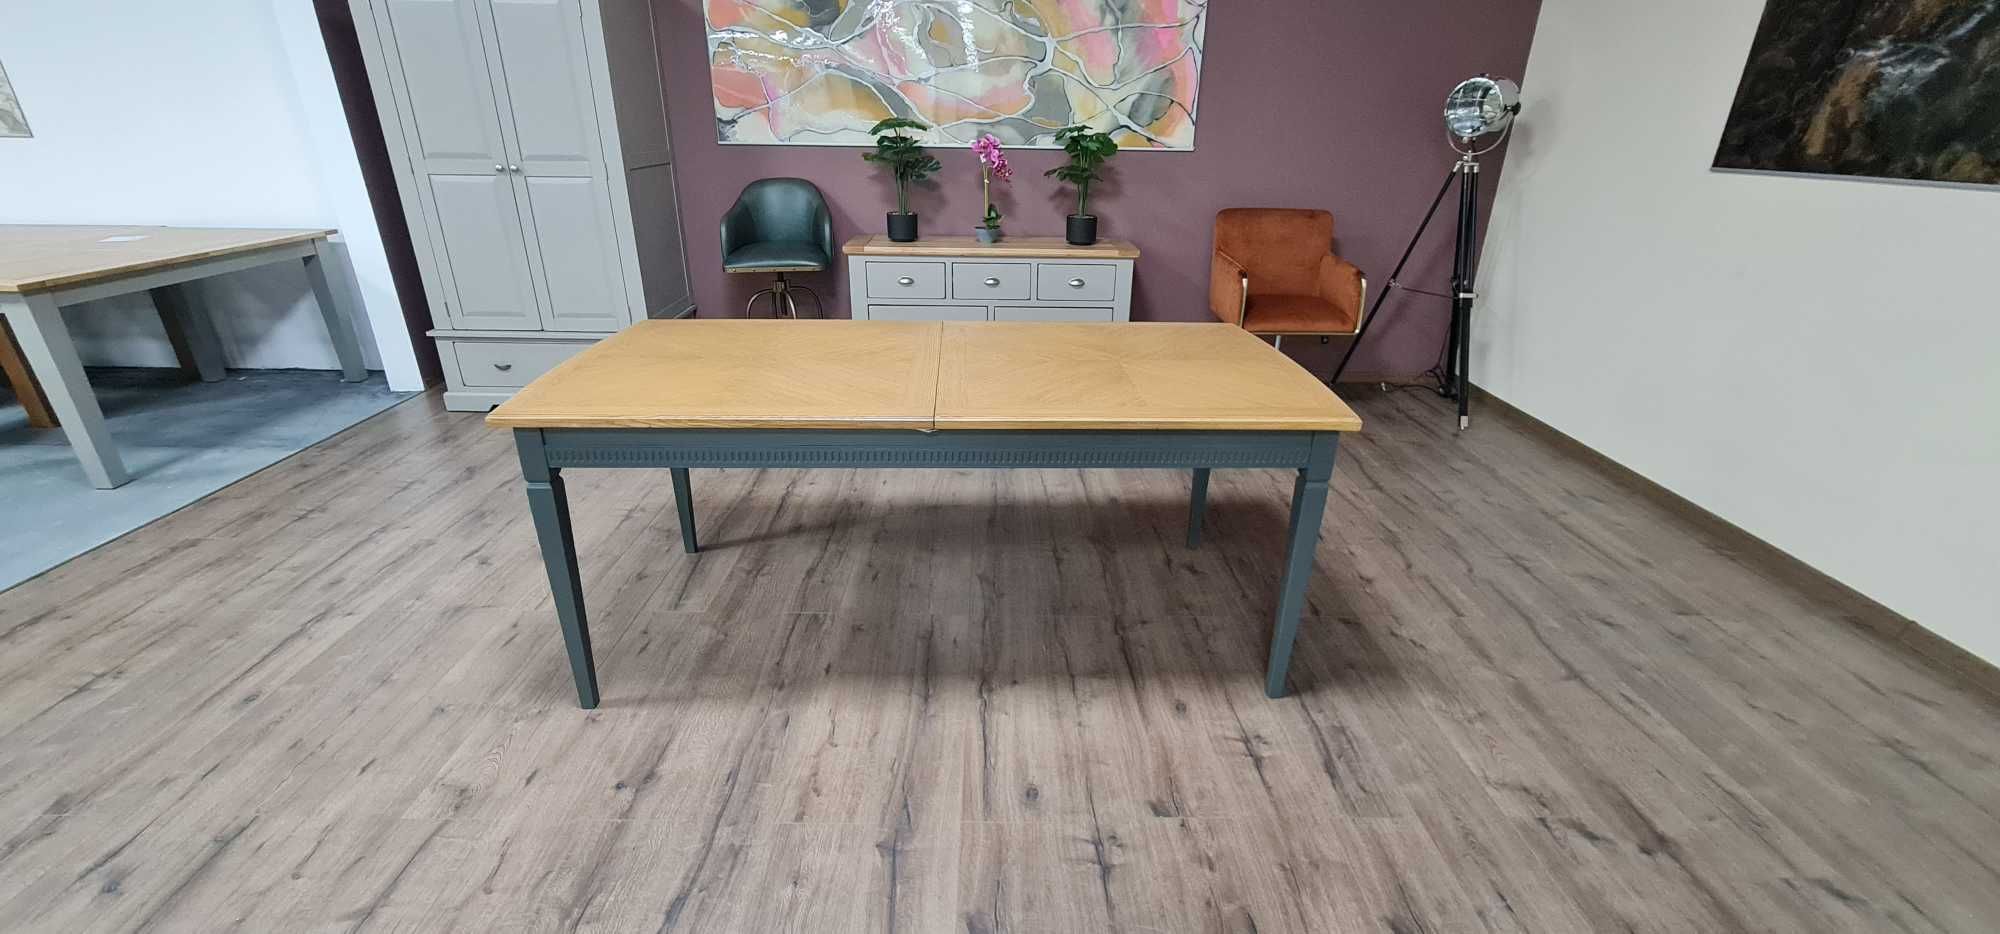 Трапезна дървена маса със сиви крака